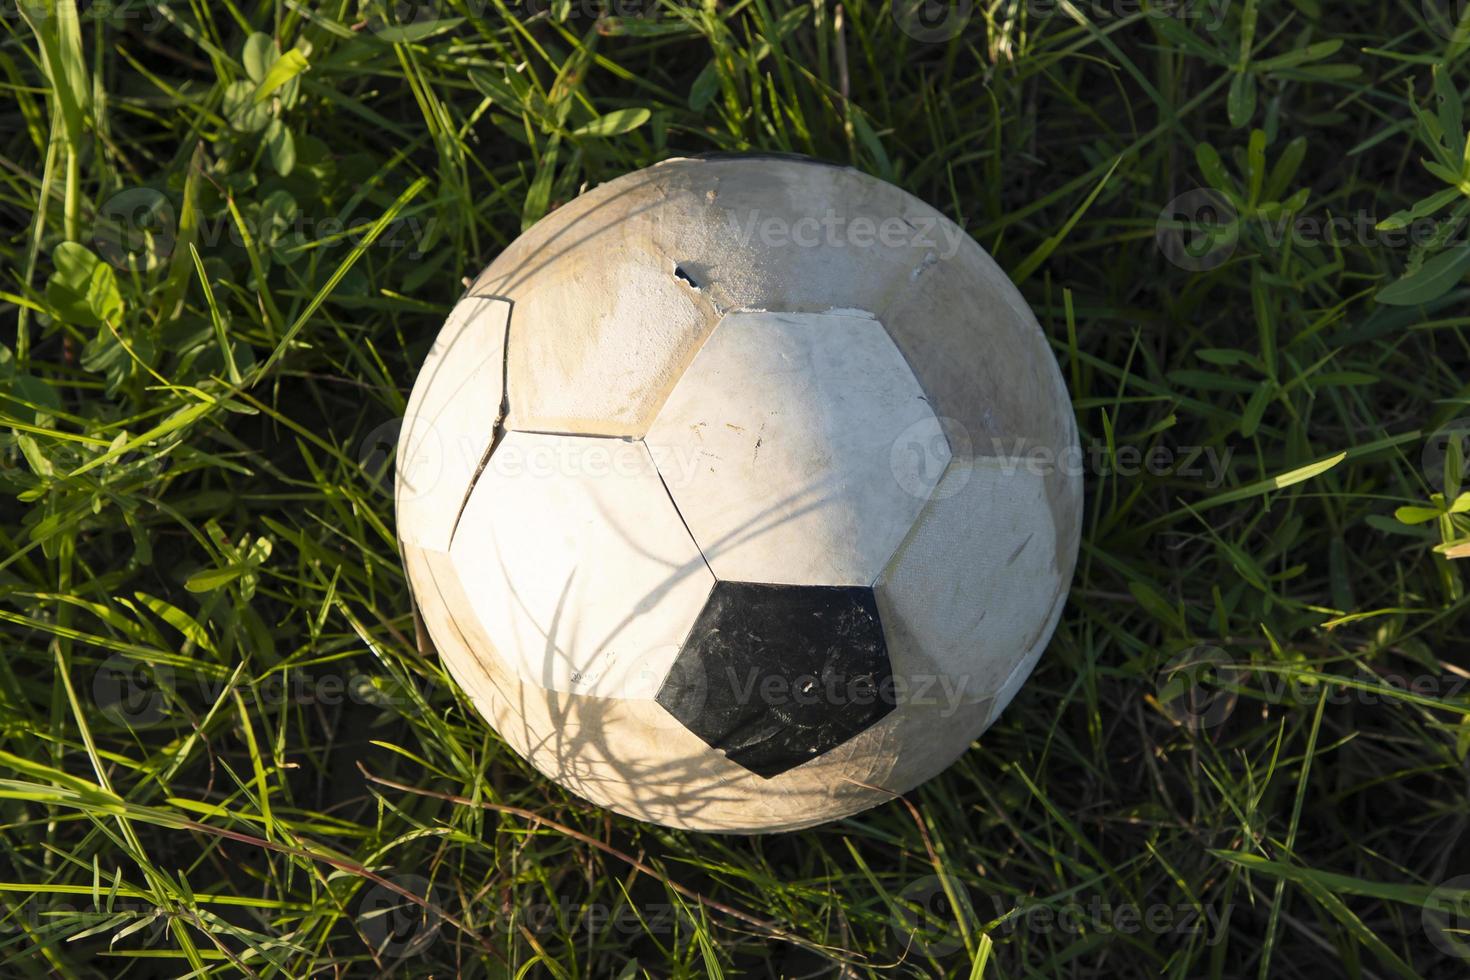 una vieja pelota de fútbol yace en la hierba, cerca foto